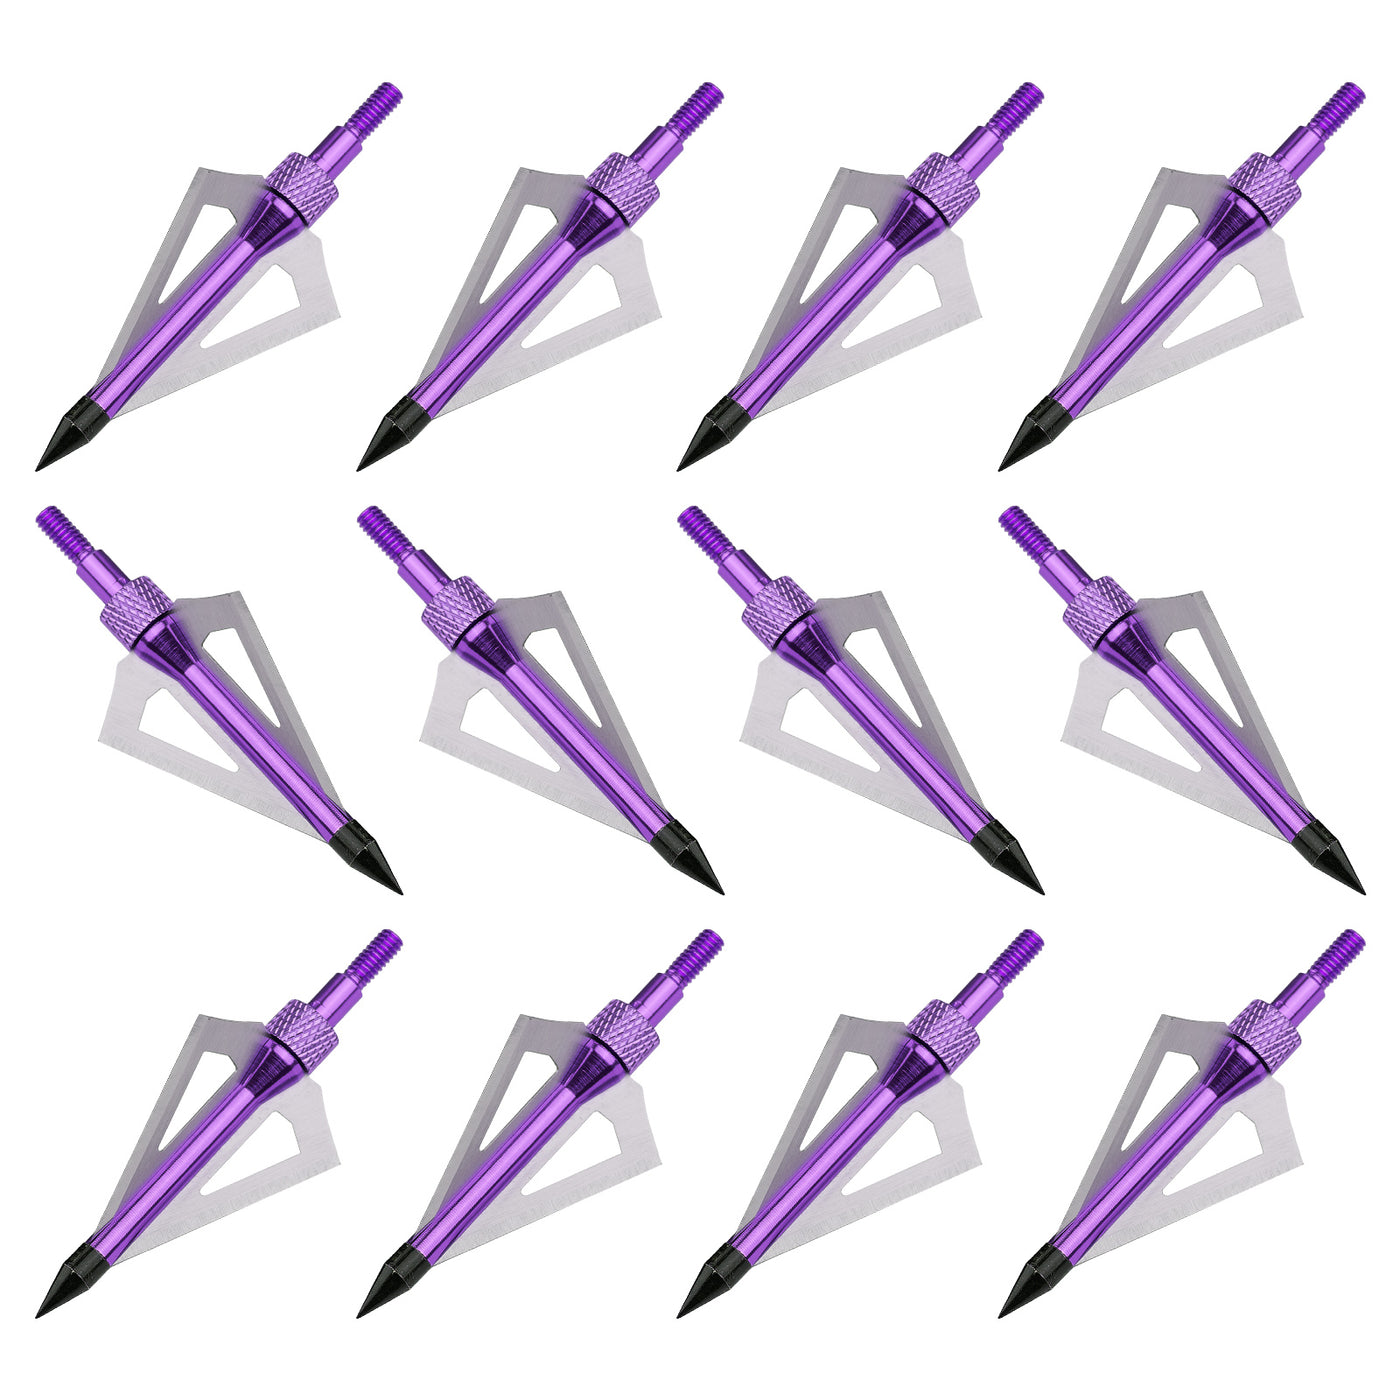 12x 100-grain Screw-in Archery Broadheads Purple/Silver